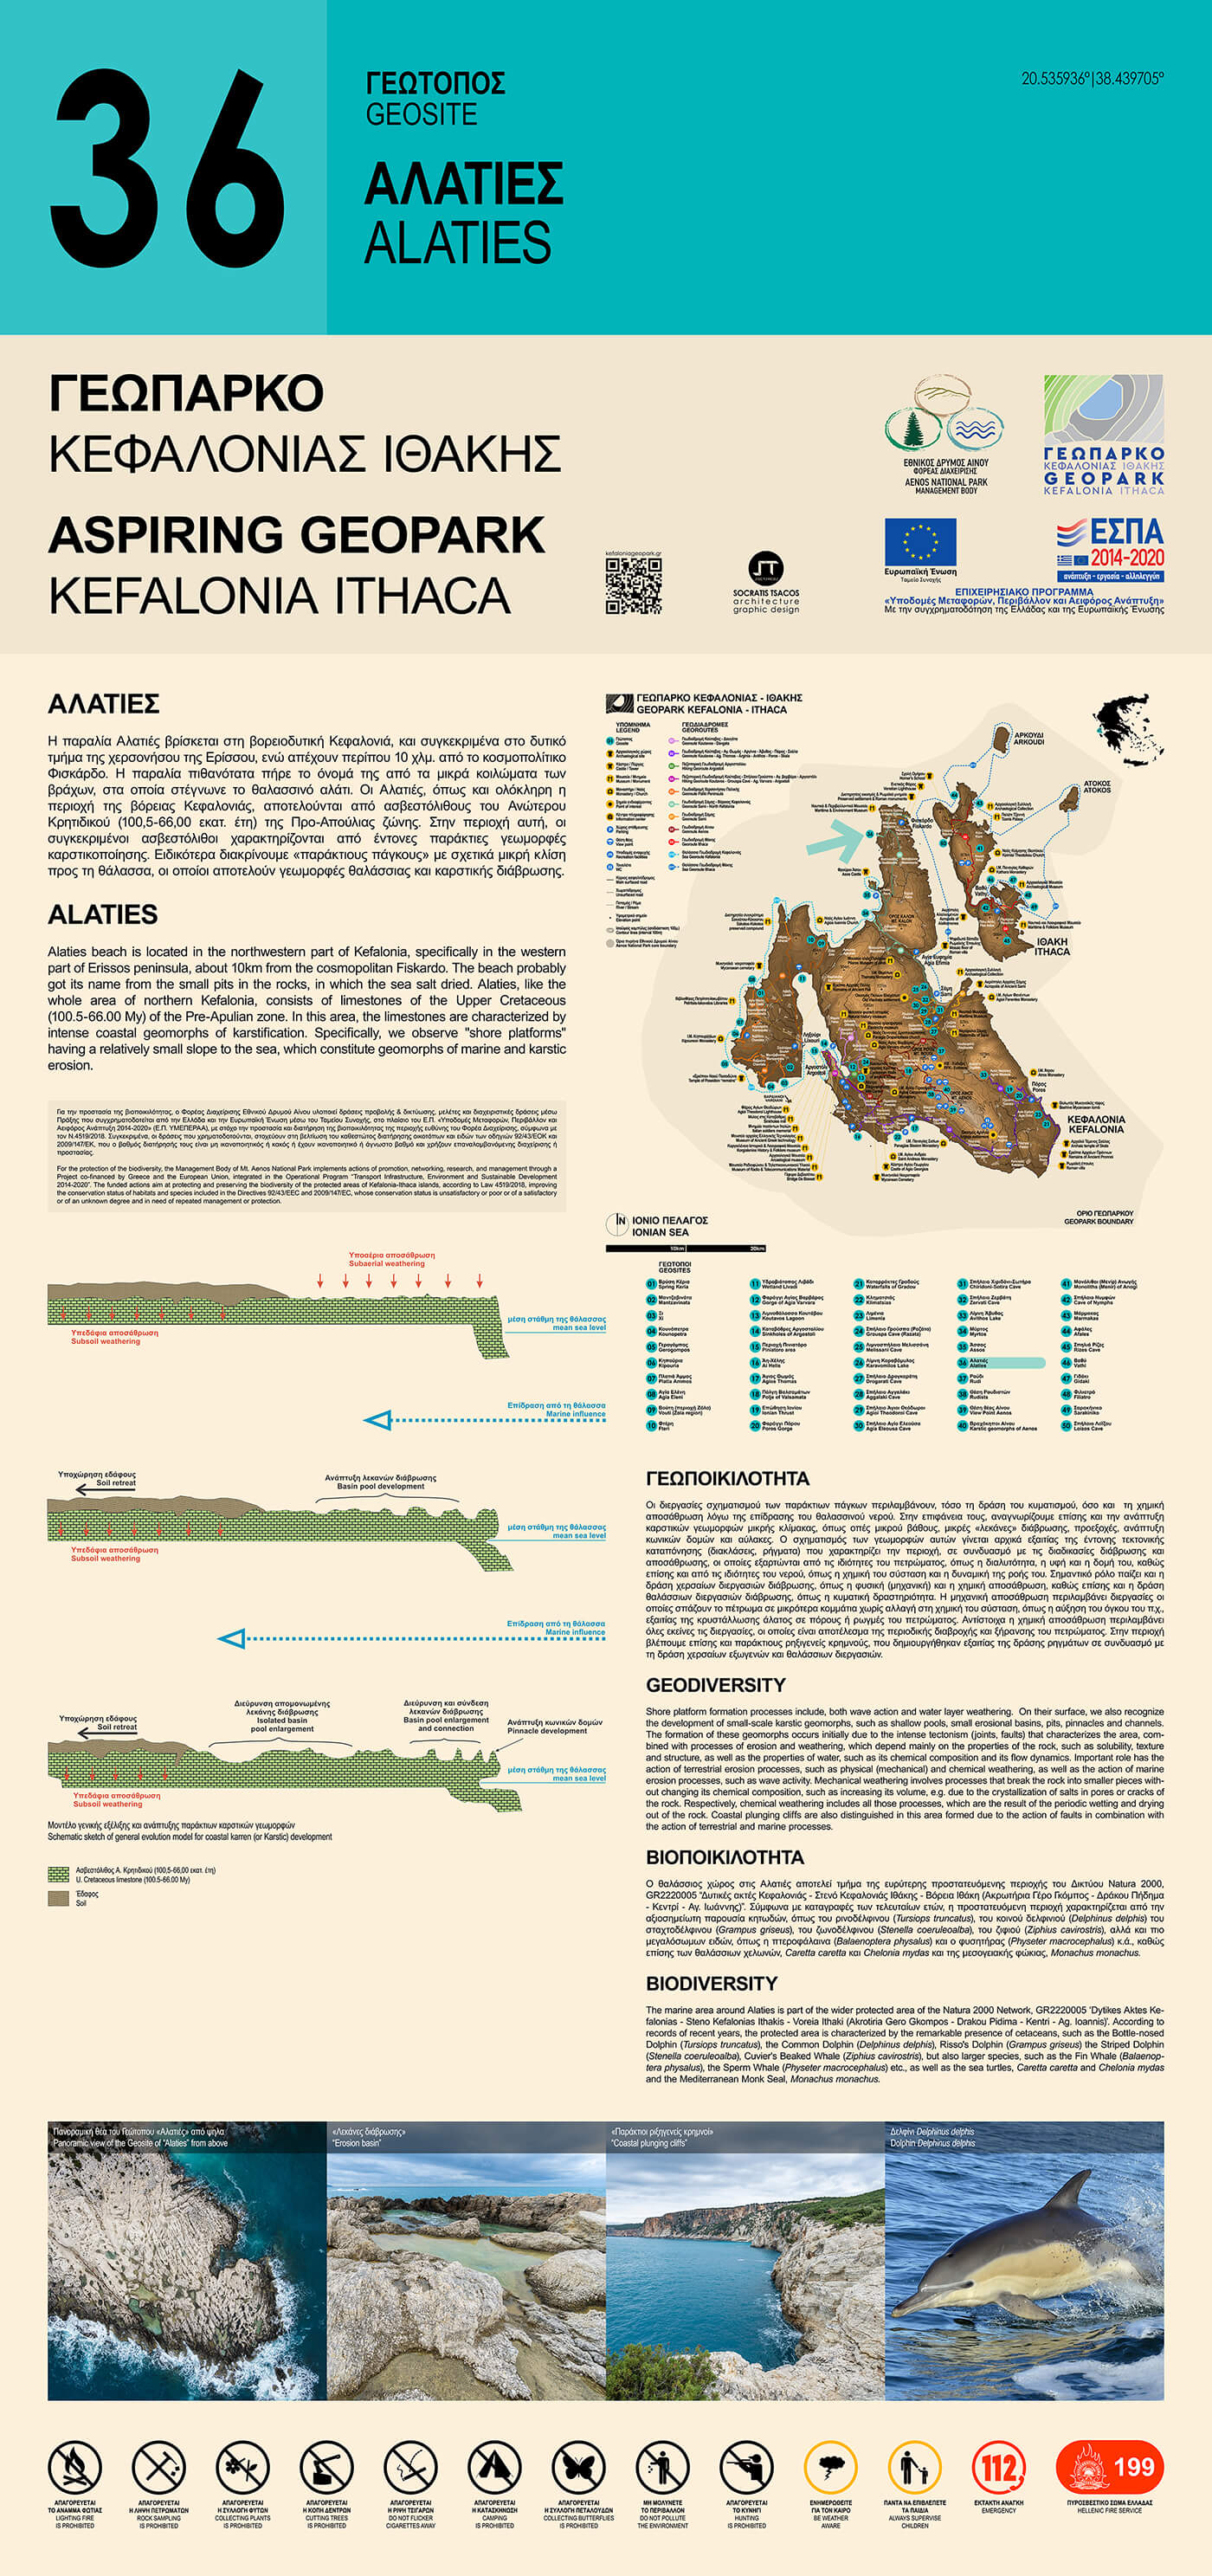 Το περιεχόμενο της Ερμηνευτικής Πινακίδας για τη γεωποικιλότητα και τη βιοποικιλότητα του Γεωτόπου Αλατιές